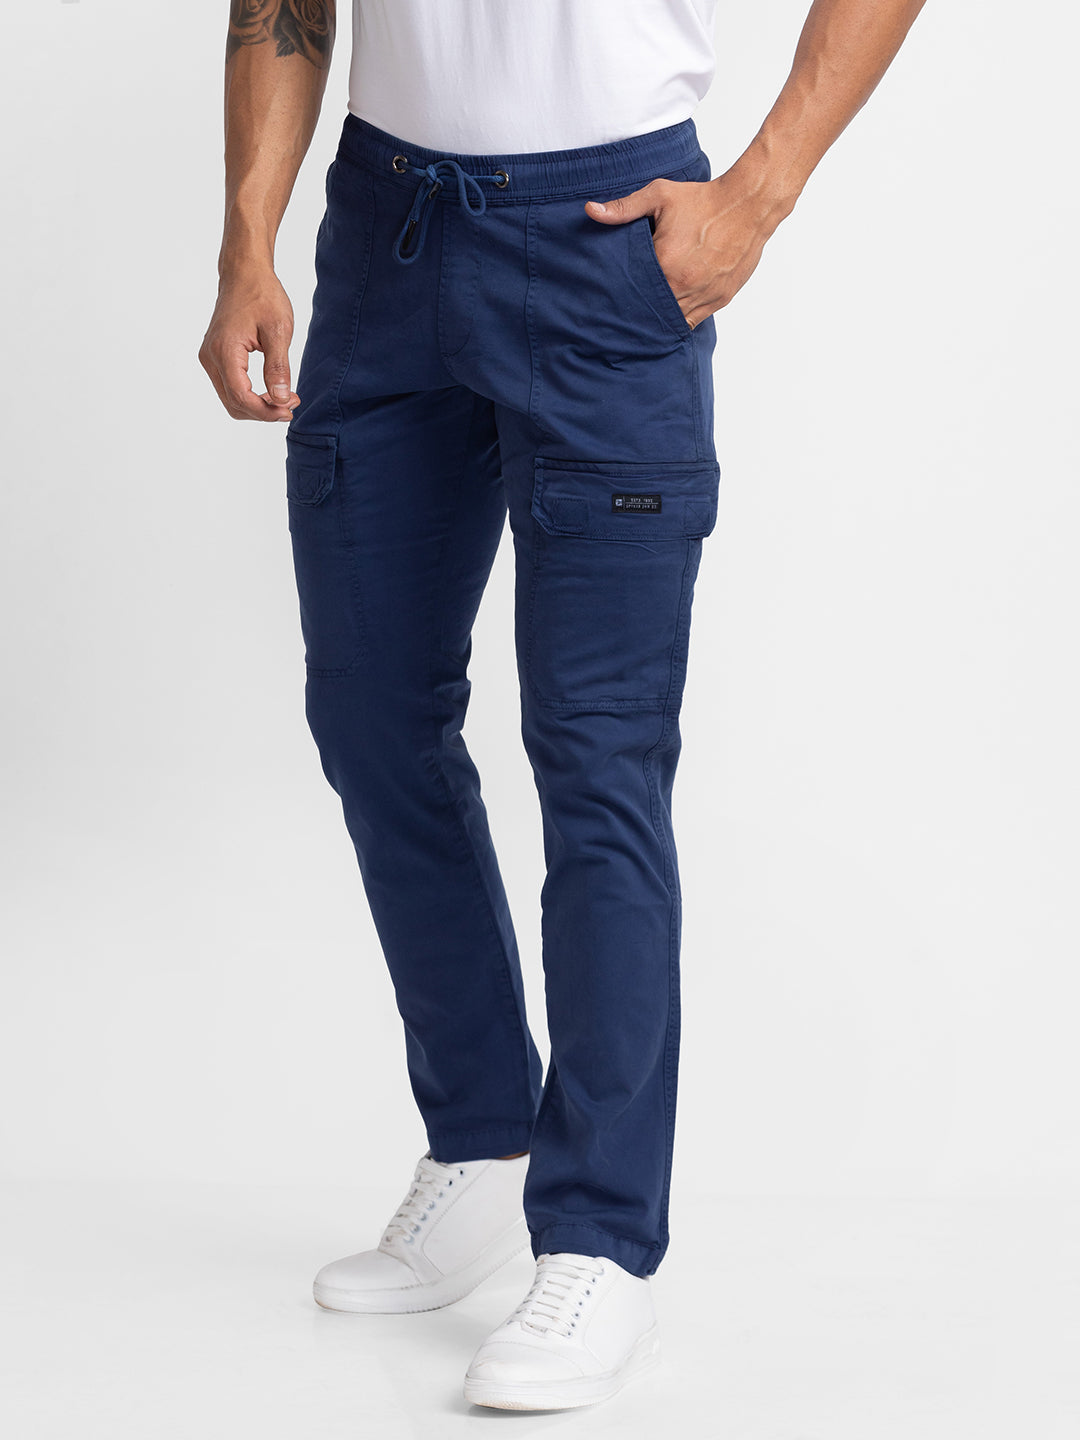 Spykar Navy Blue Cotton Slim Fit Regular Length Trouser For Men